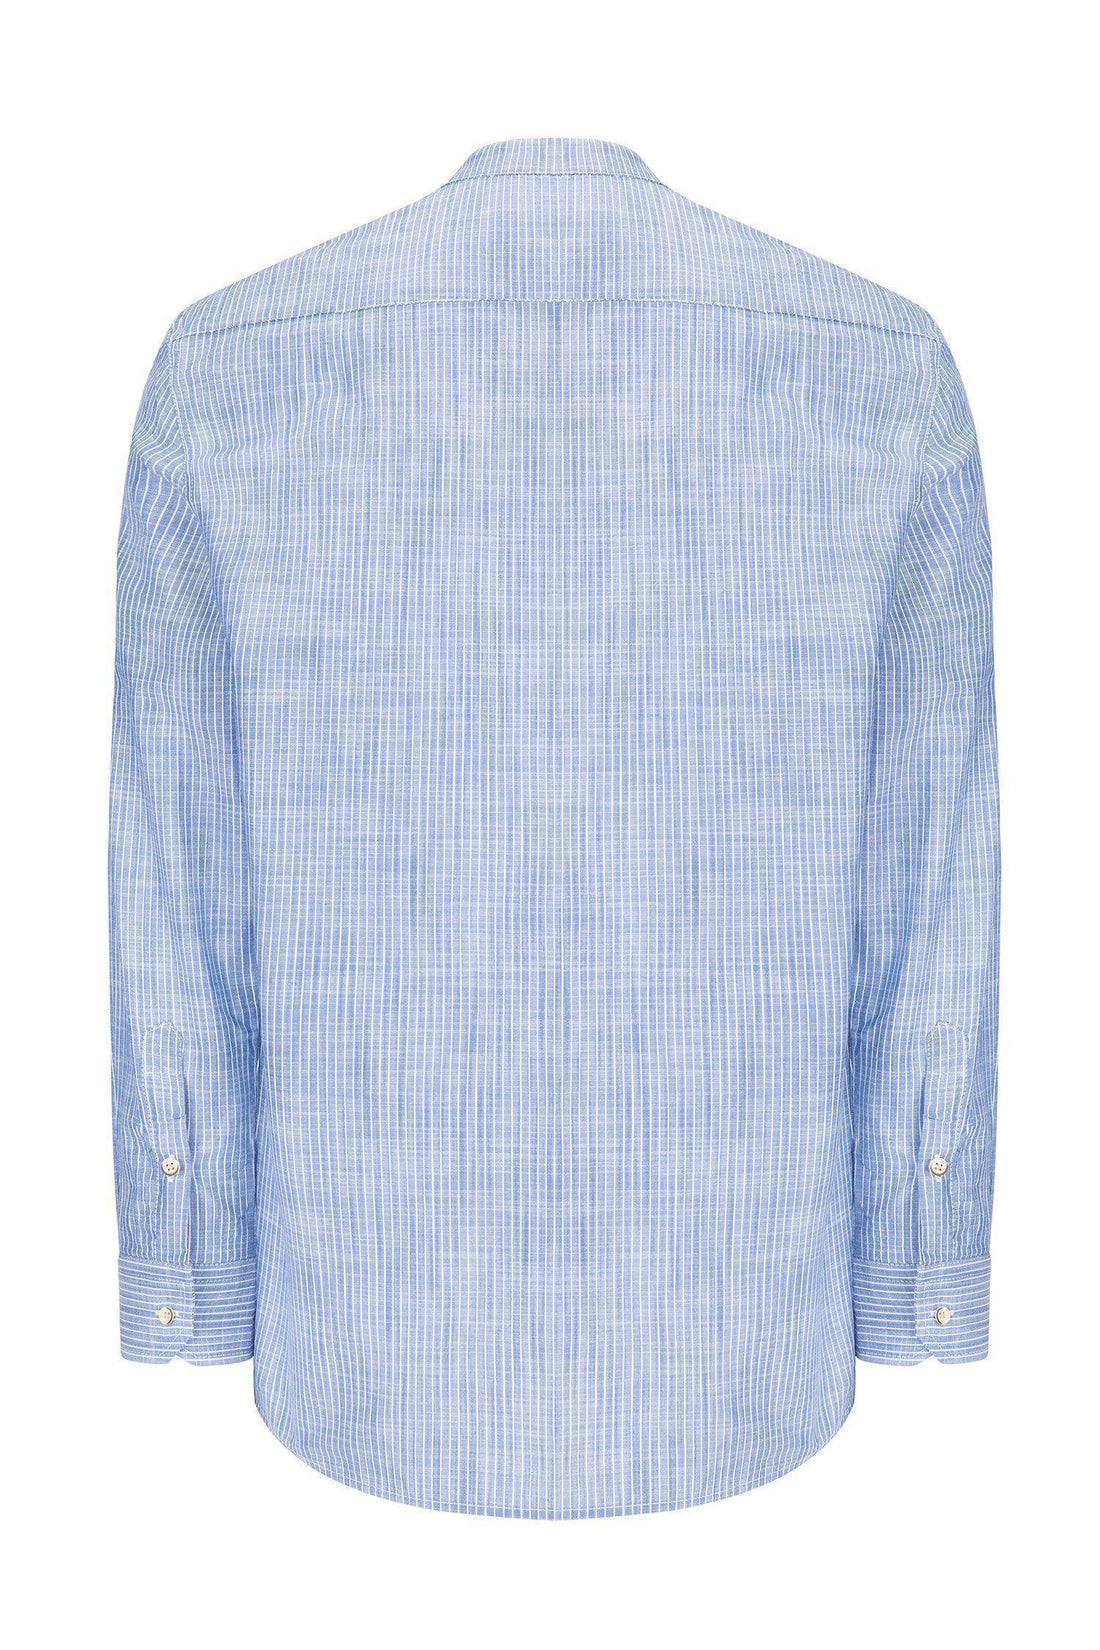 Striped Cotton Shirt - DARK BLUE - Ron Tomson